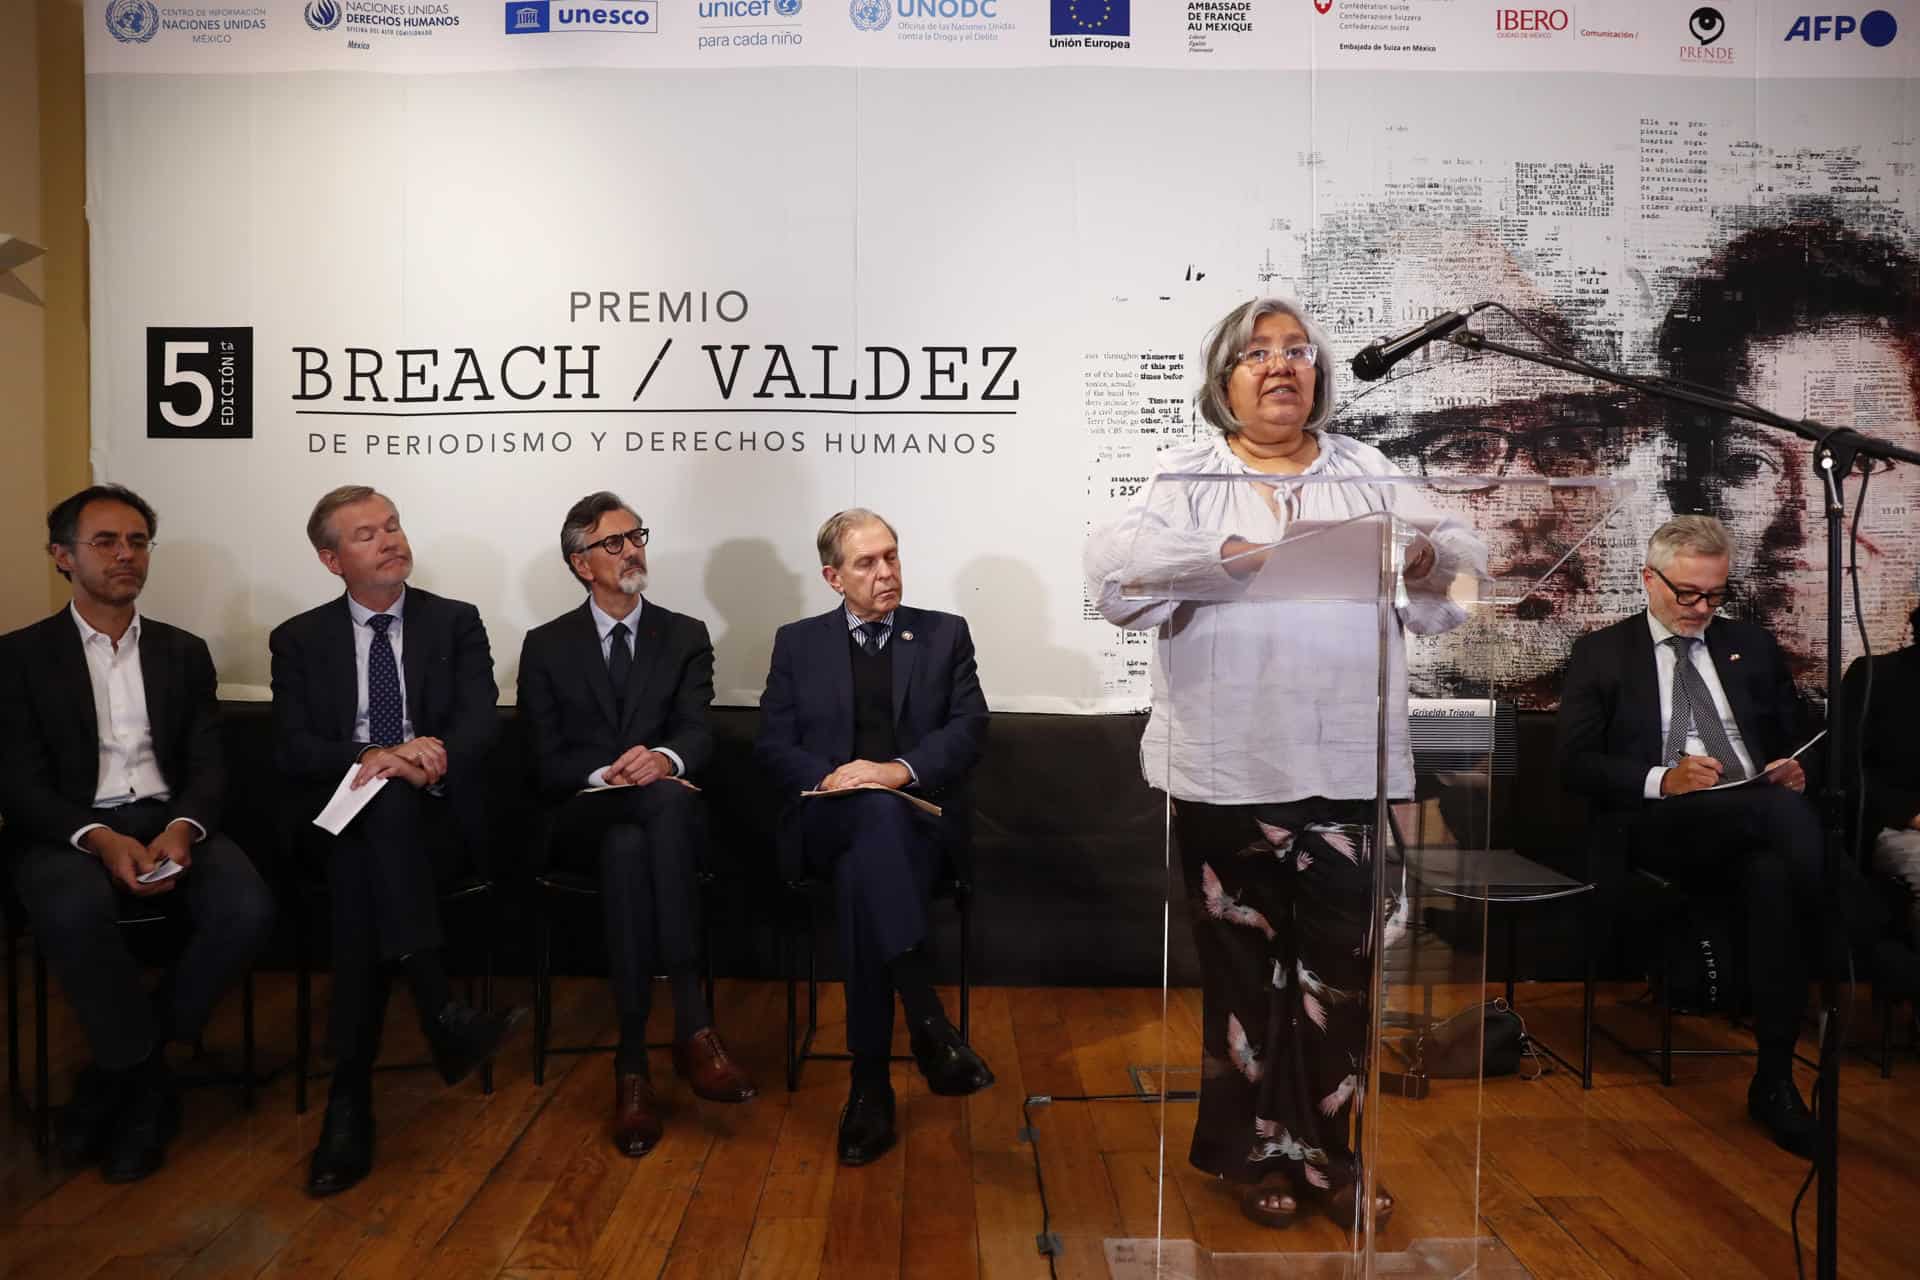 Premio Breach/Valdez reconocerá periodismo enfocado en infancia